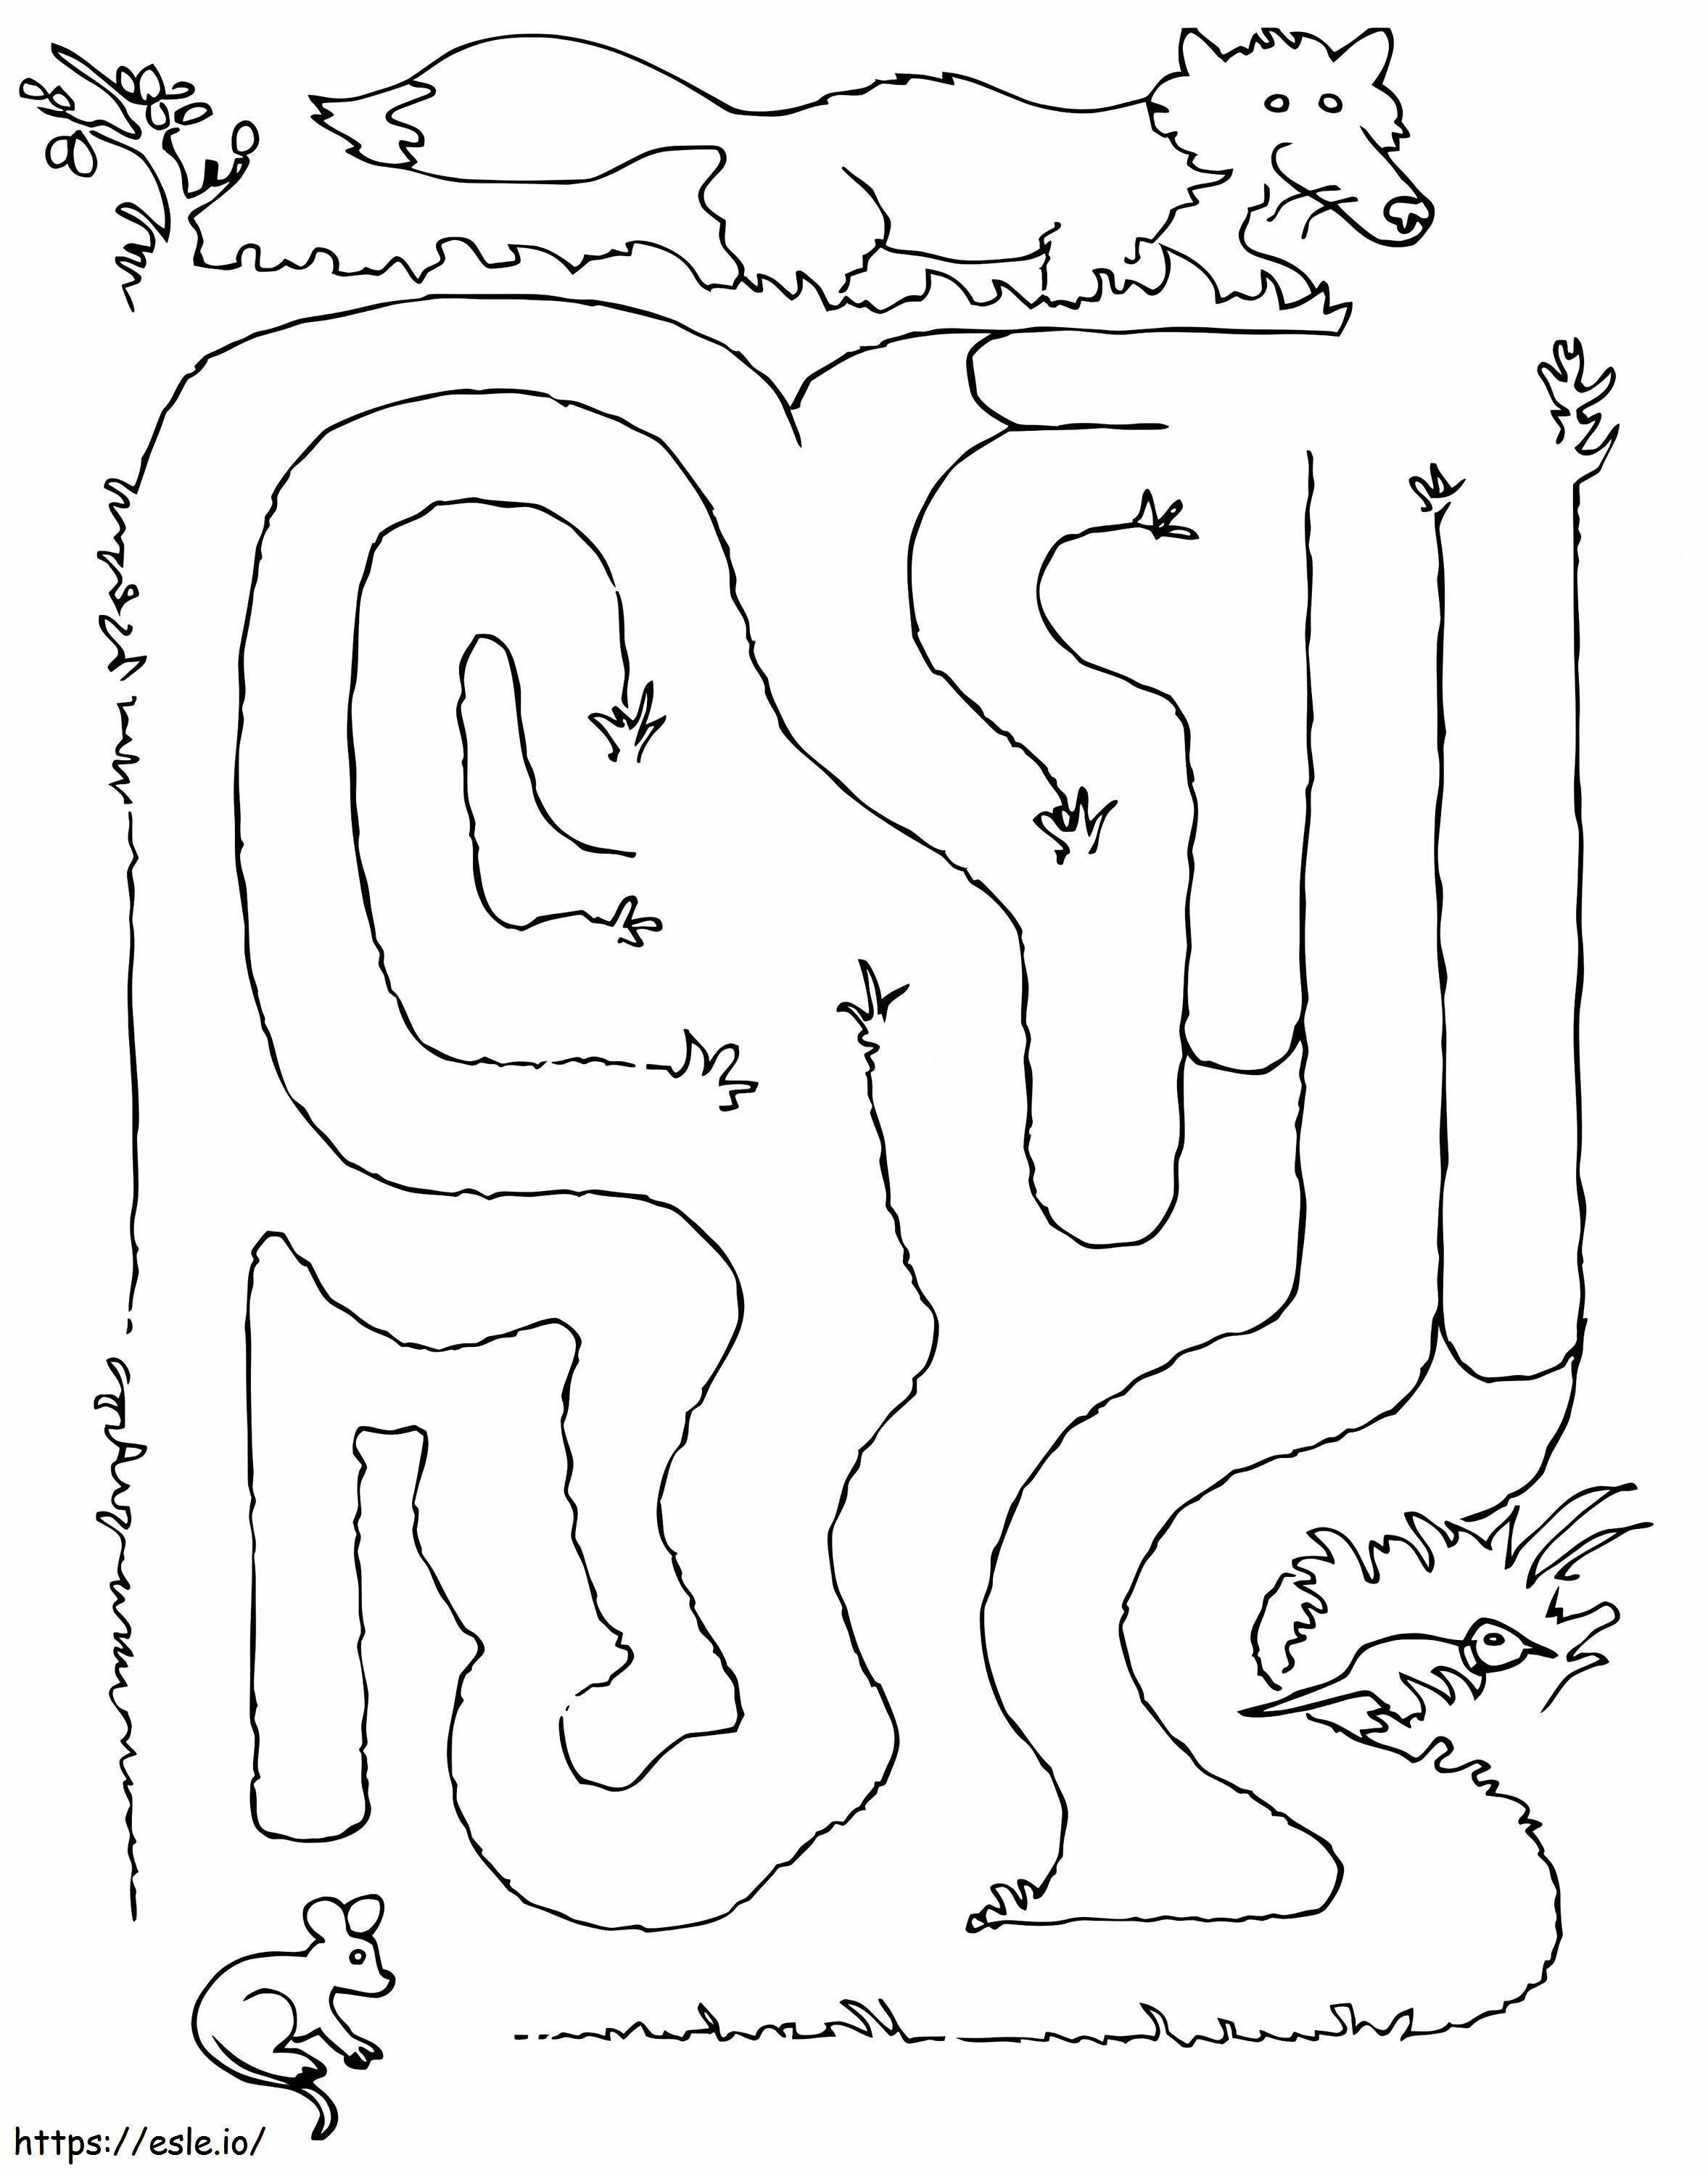 Jagdlabyrinth ausmalbilder